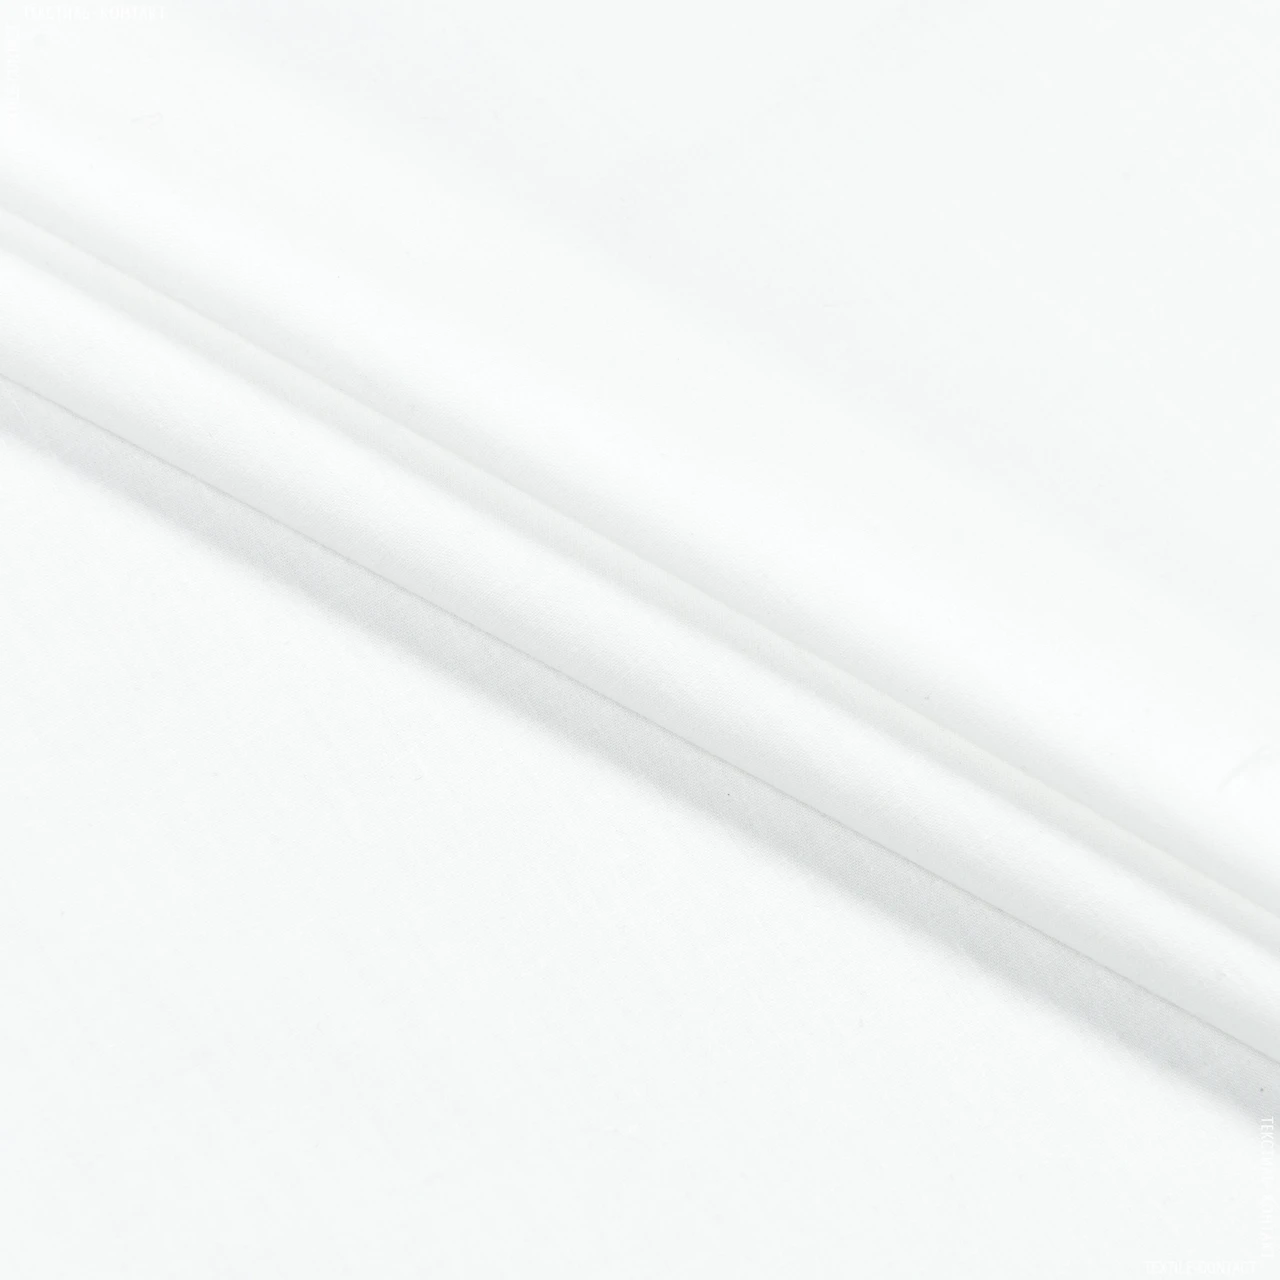 Тік напірниковий набивний opt-white (220см 140г/м² пог.м) 169751